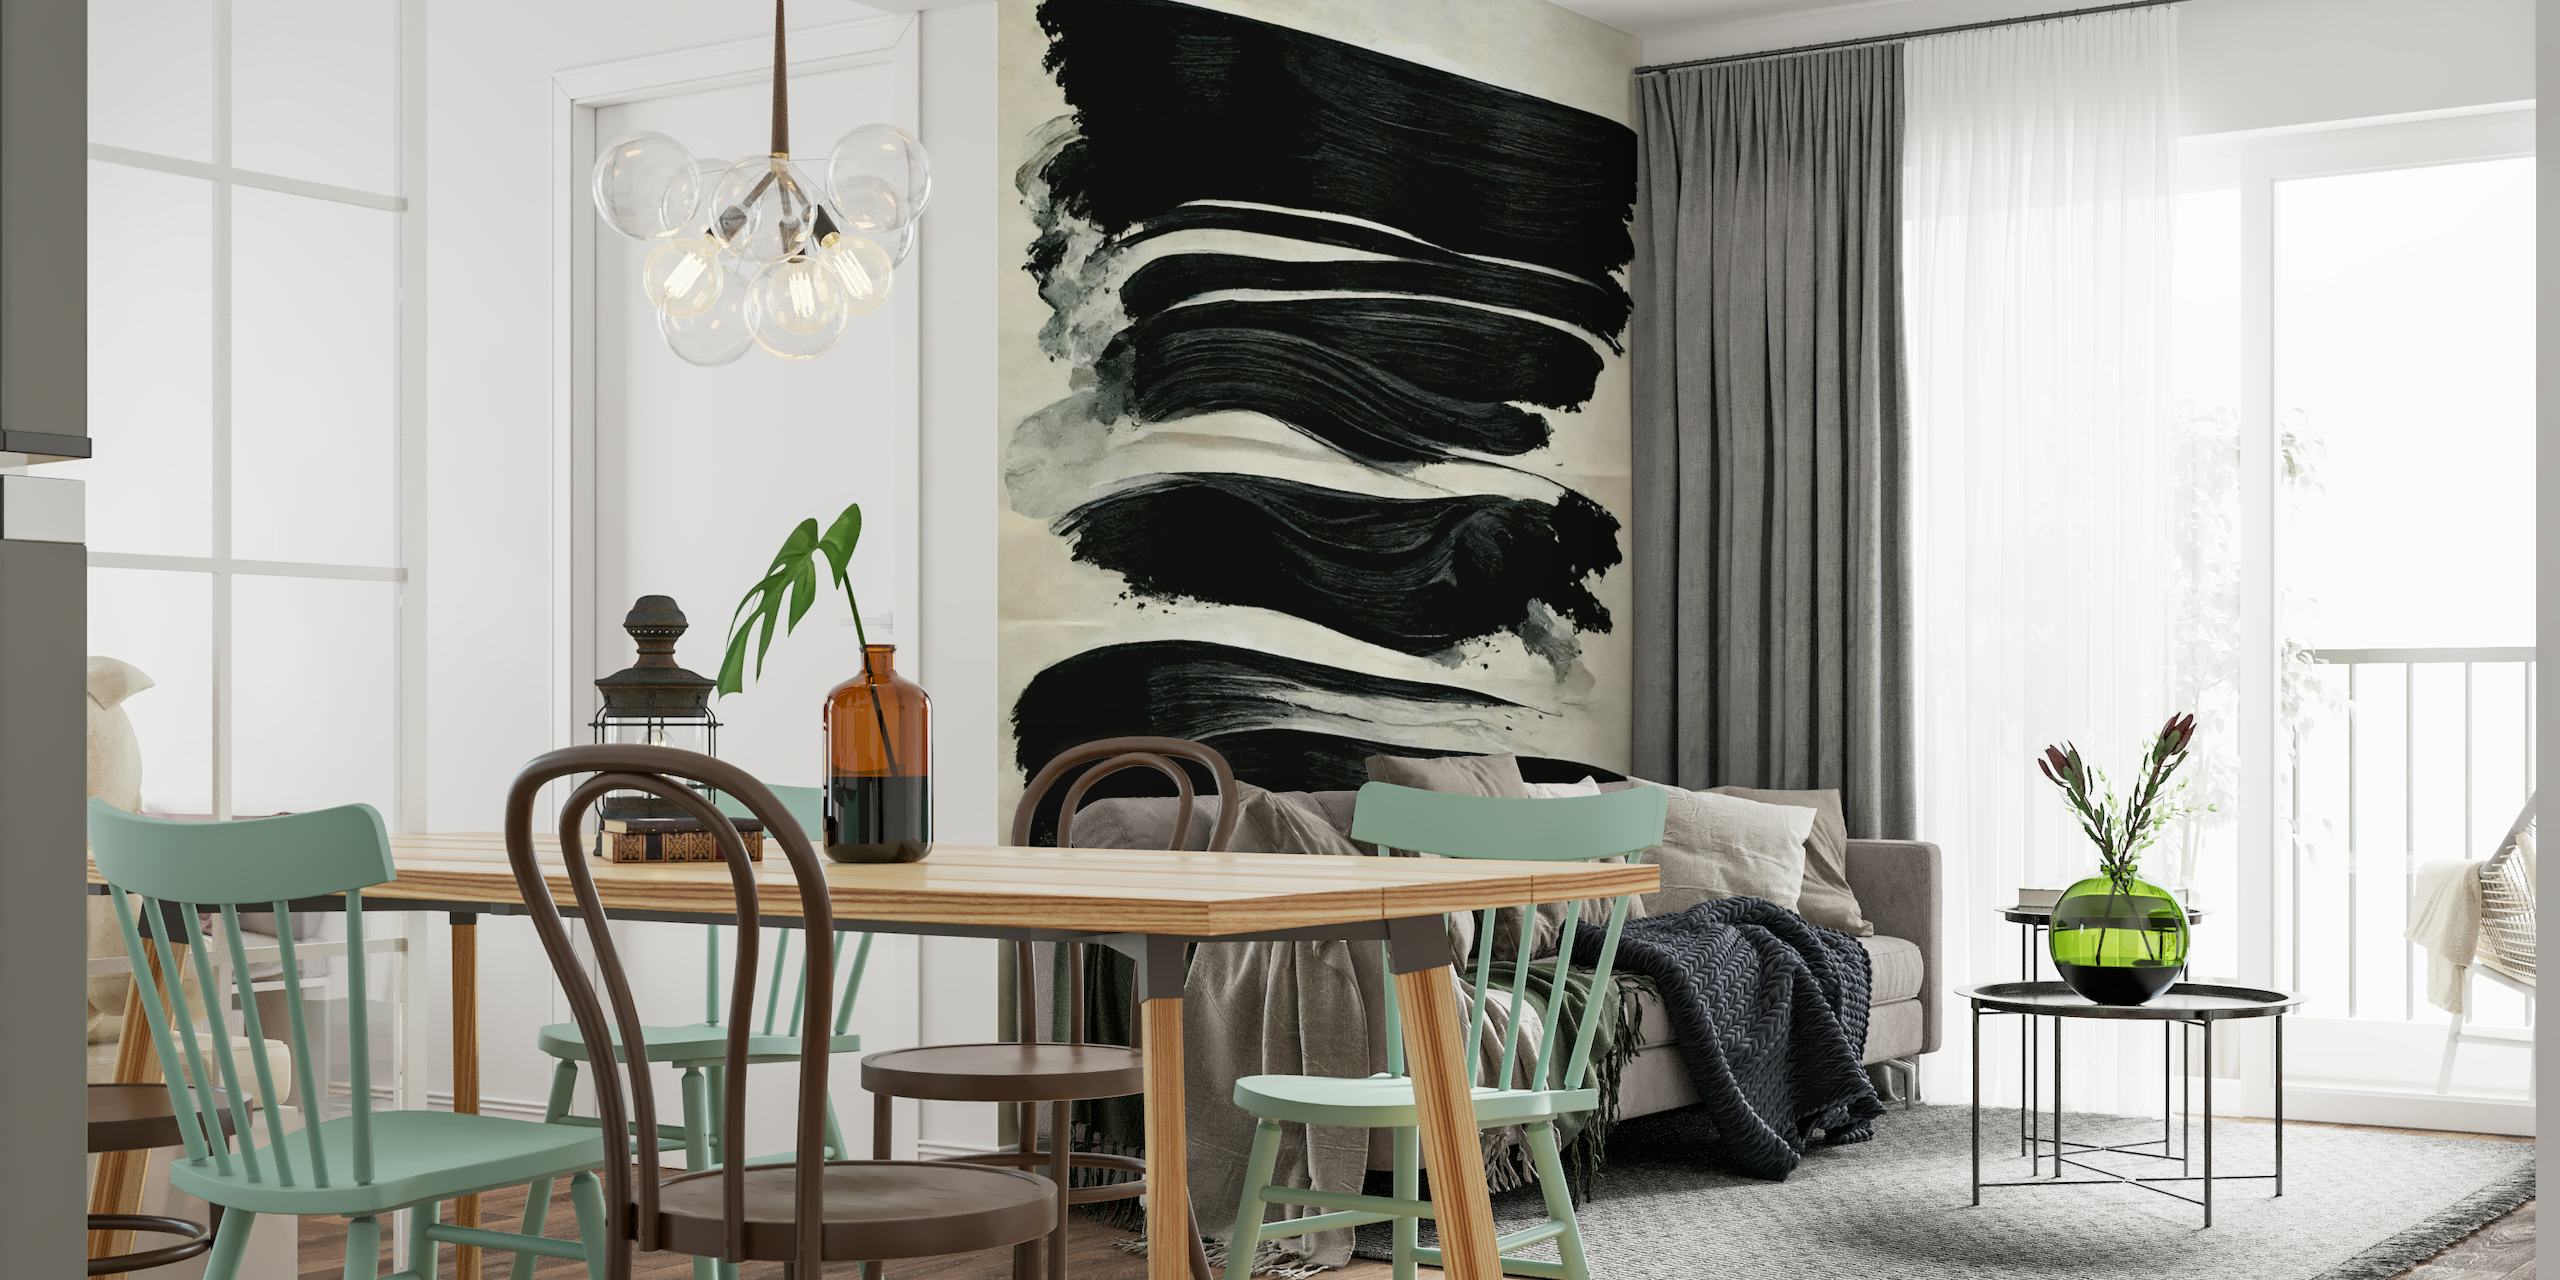 Abstracte zwarte penseelstreken op een ivoren muurschildering als achtergrond